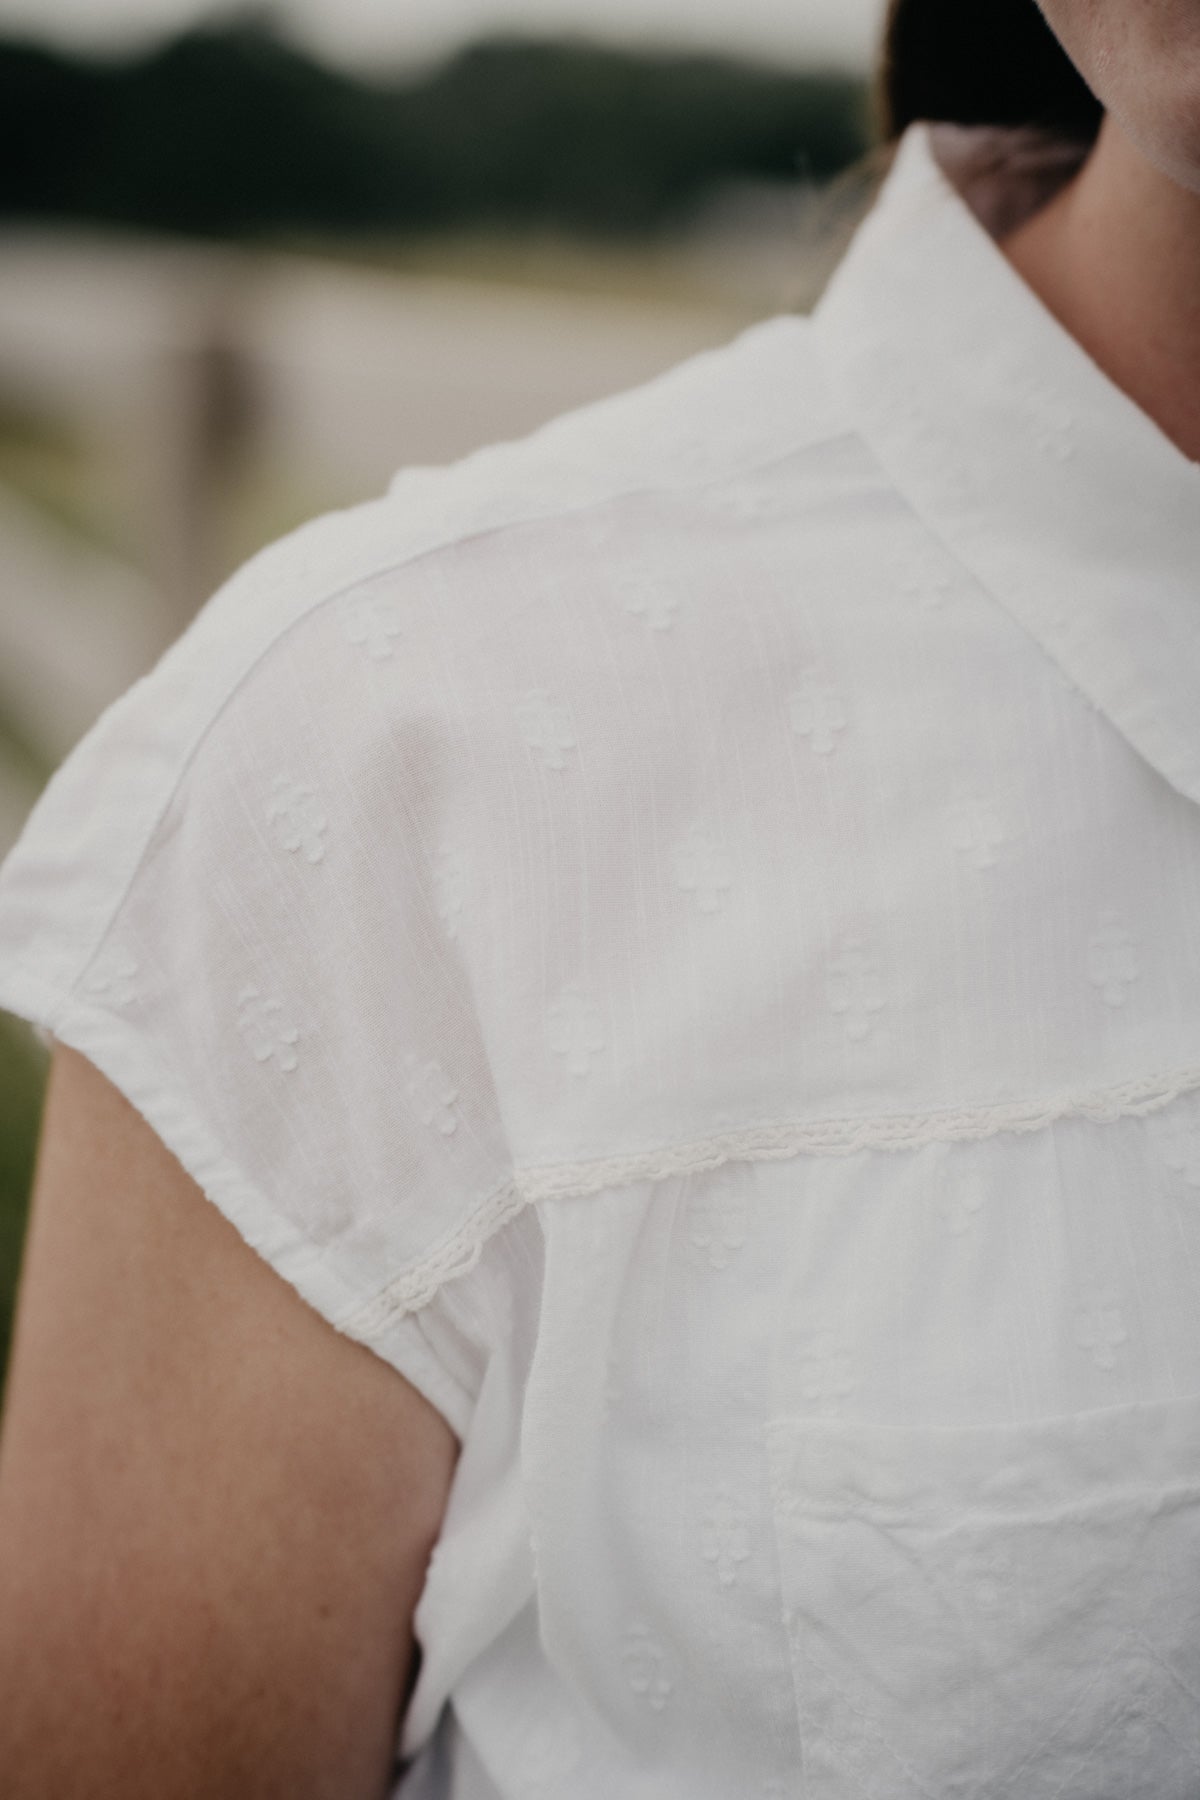 'Camden' White Smocked Short Sleeve Blouse by Wrangler (1 XXL Only)